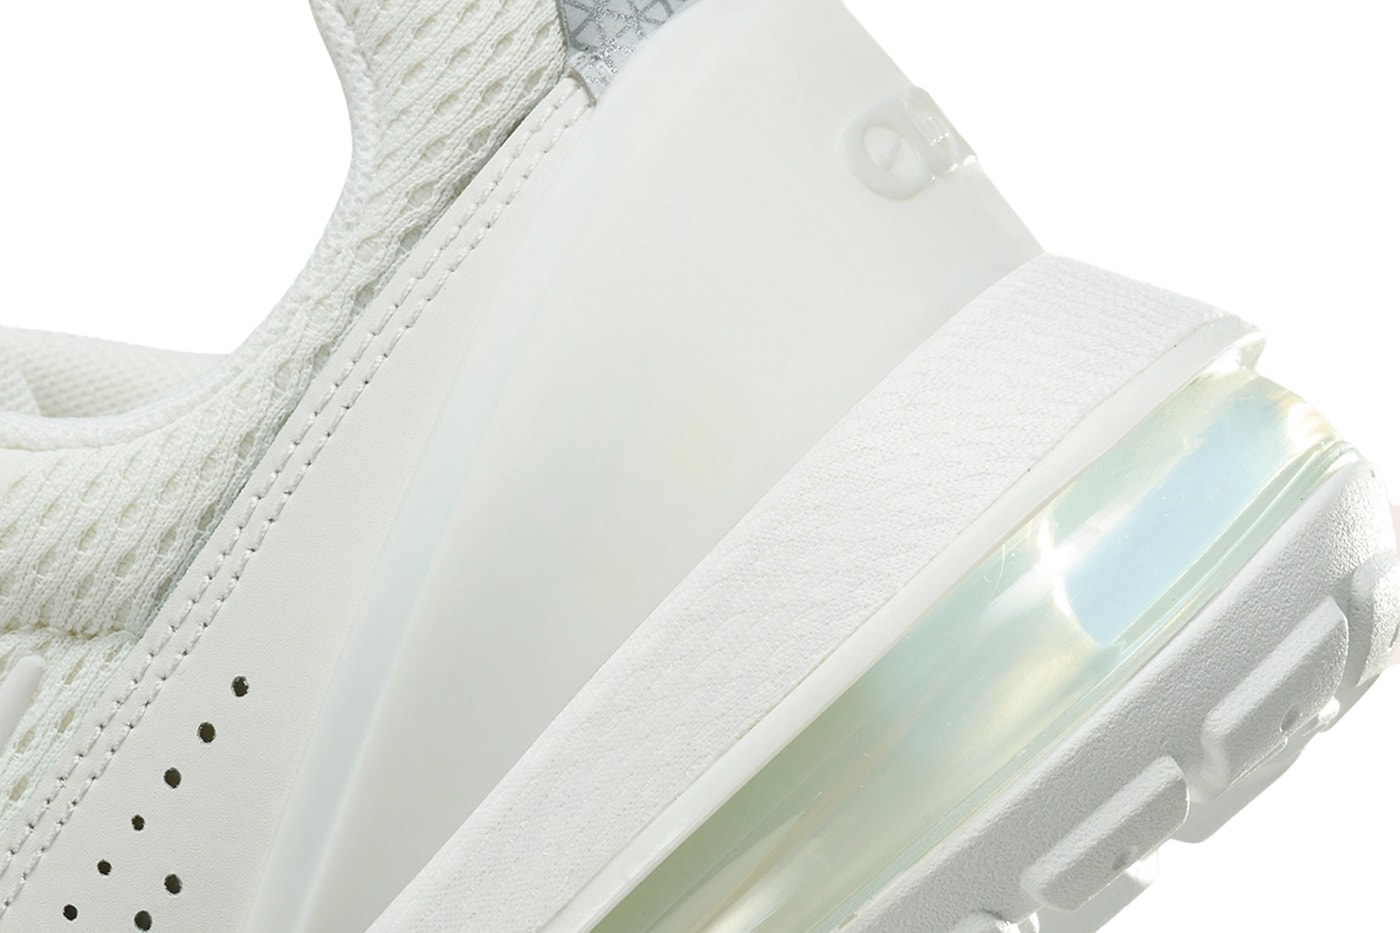 ナイキ エア マックス パルスからオールホワイトでまとめた新作が登場 Nike Air Max Pulse Surfaces in Tonal "Sail" Hues for Summer womens all white shoe sneakers comfort everyday